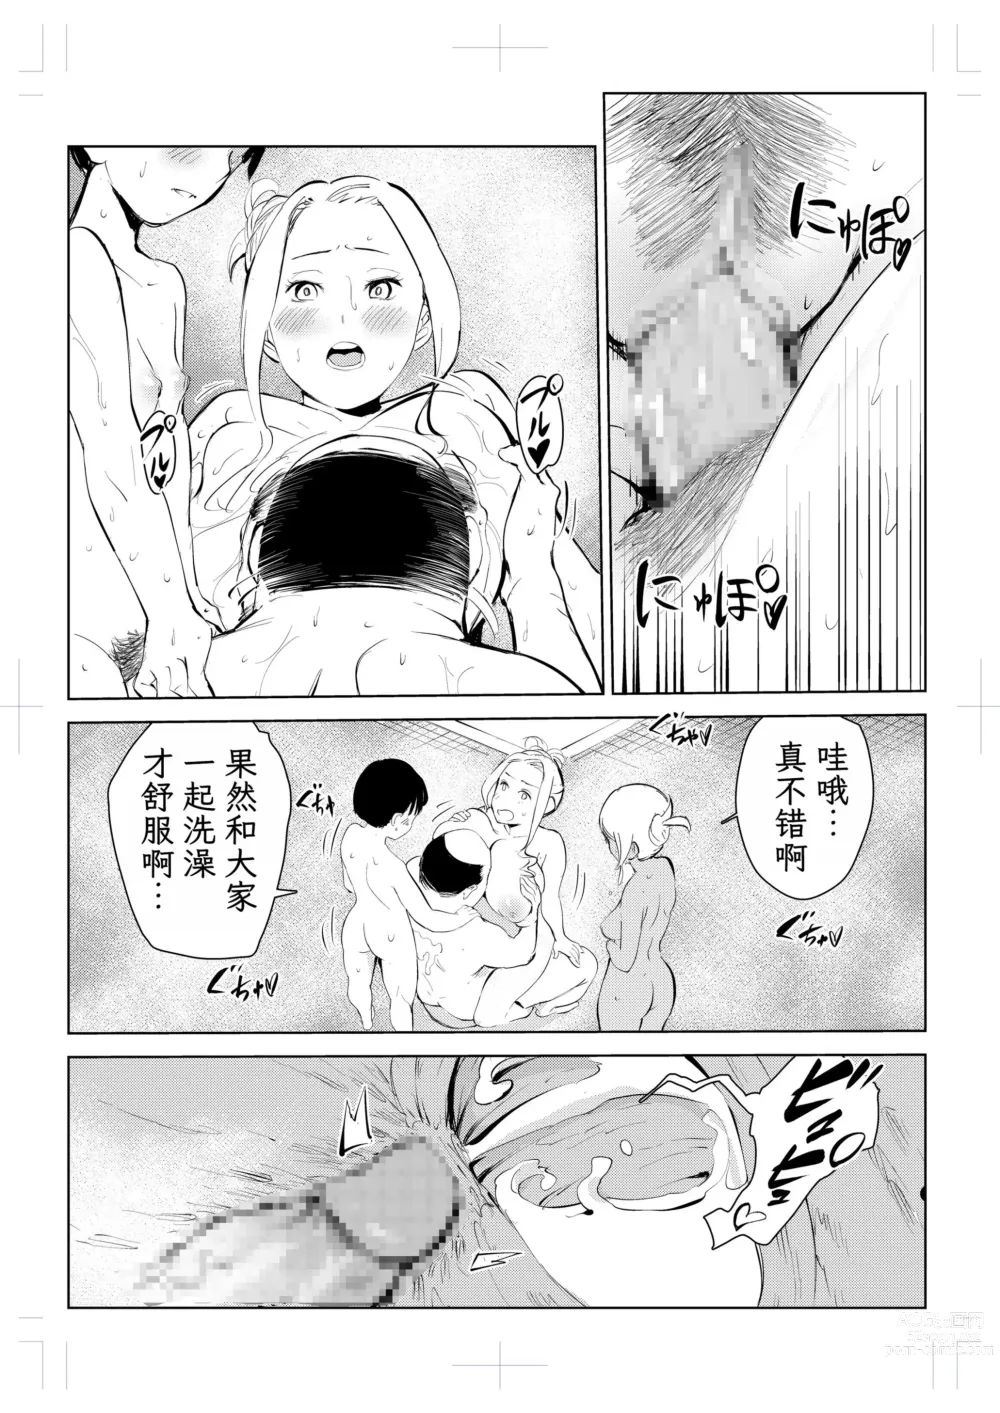 Page 294 of doujinshi 40-sai no Mahoutukai  1-4